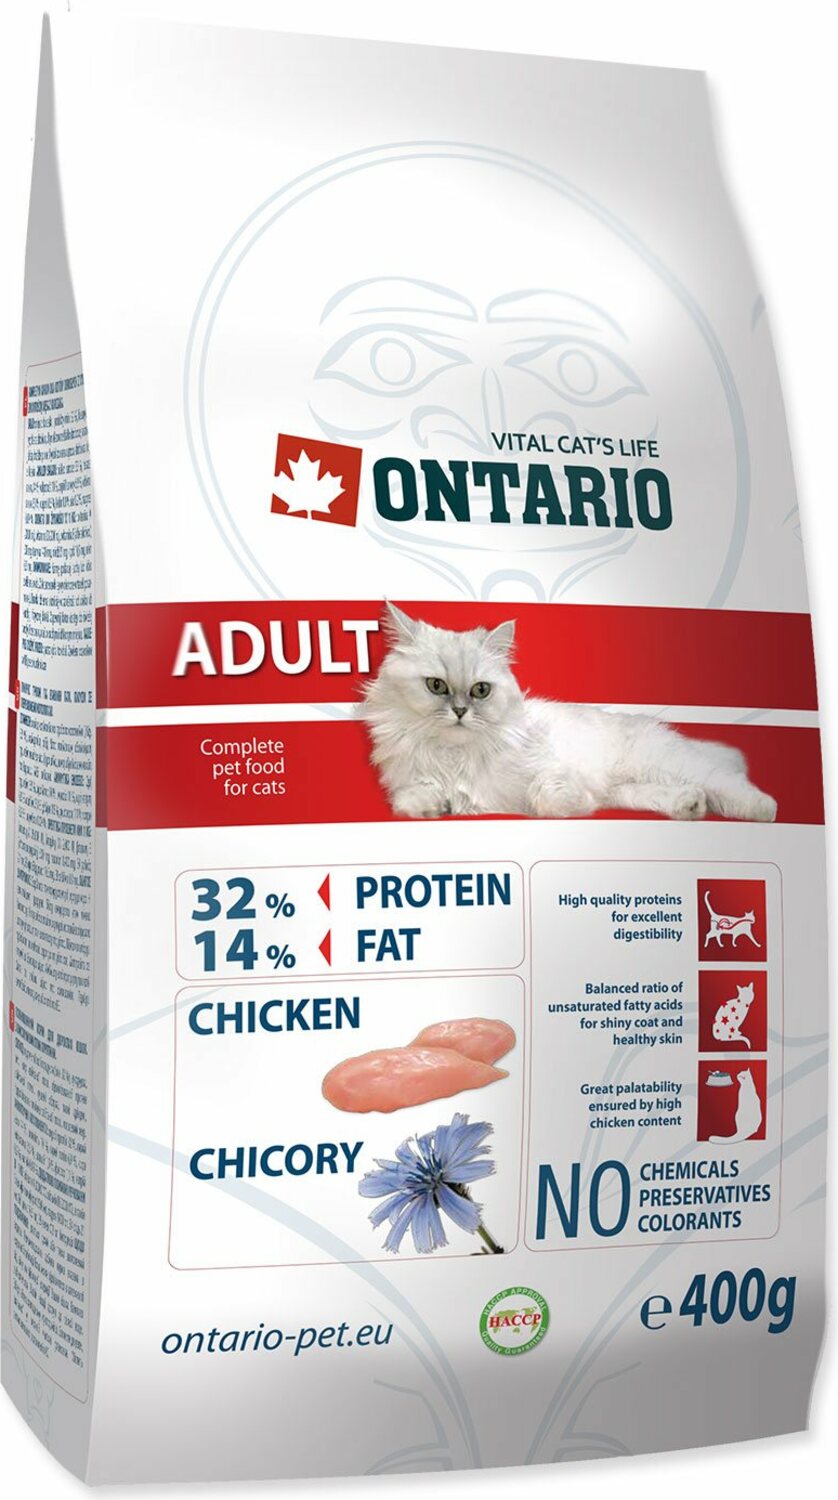 Krmivo Ontario Adult 0,4kg